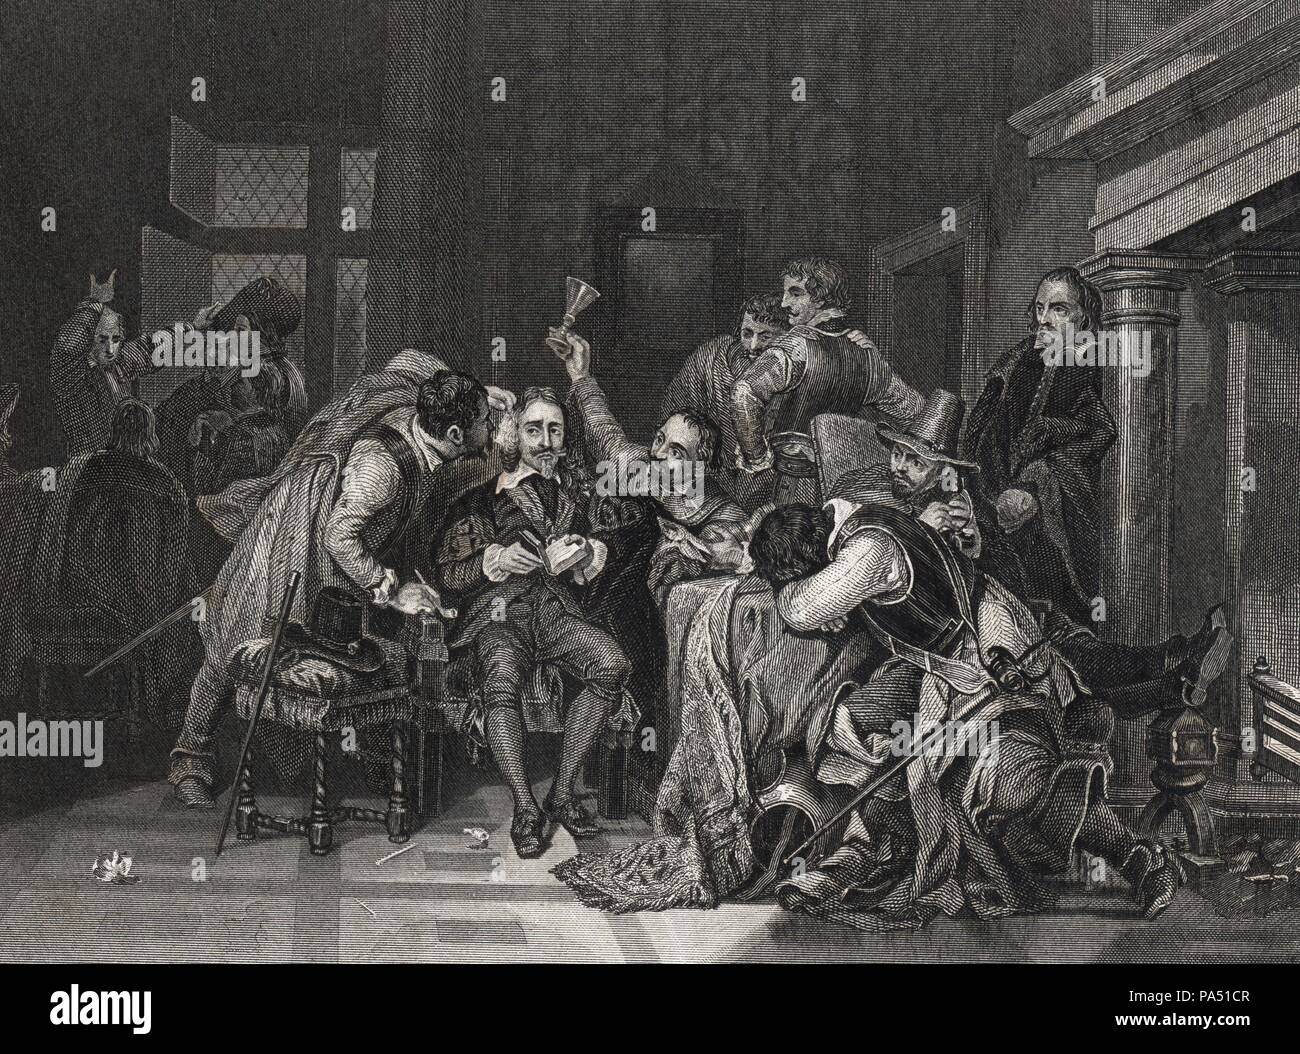 Carlos I (1600-1649), rey de Inglaterra y de Escocia en prisión antes de ser decapitado acusado de alta traición. Grabado de 1864. Stock Photo